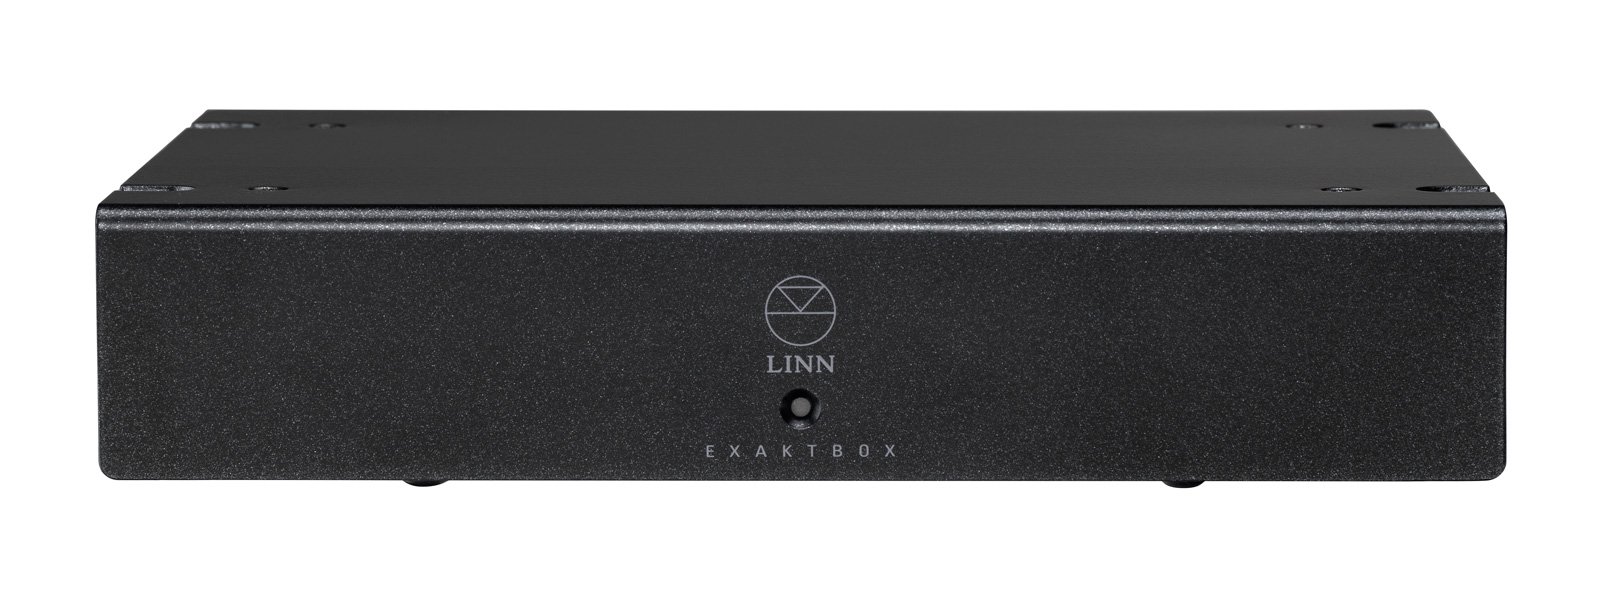 Linn-Exaktbox-Sub-Front-Top-Web-Res.jpeg